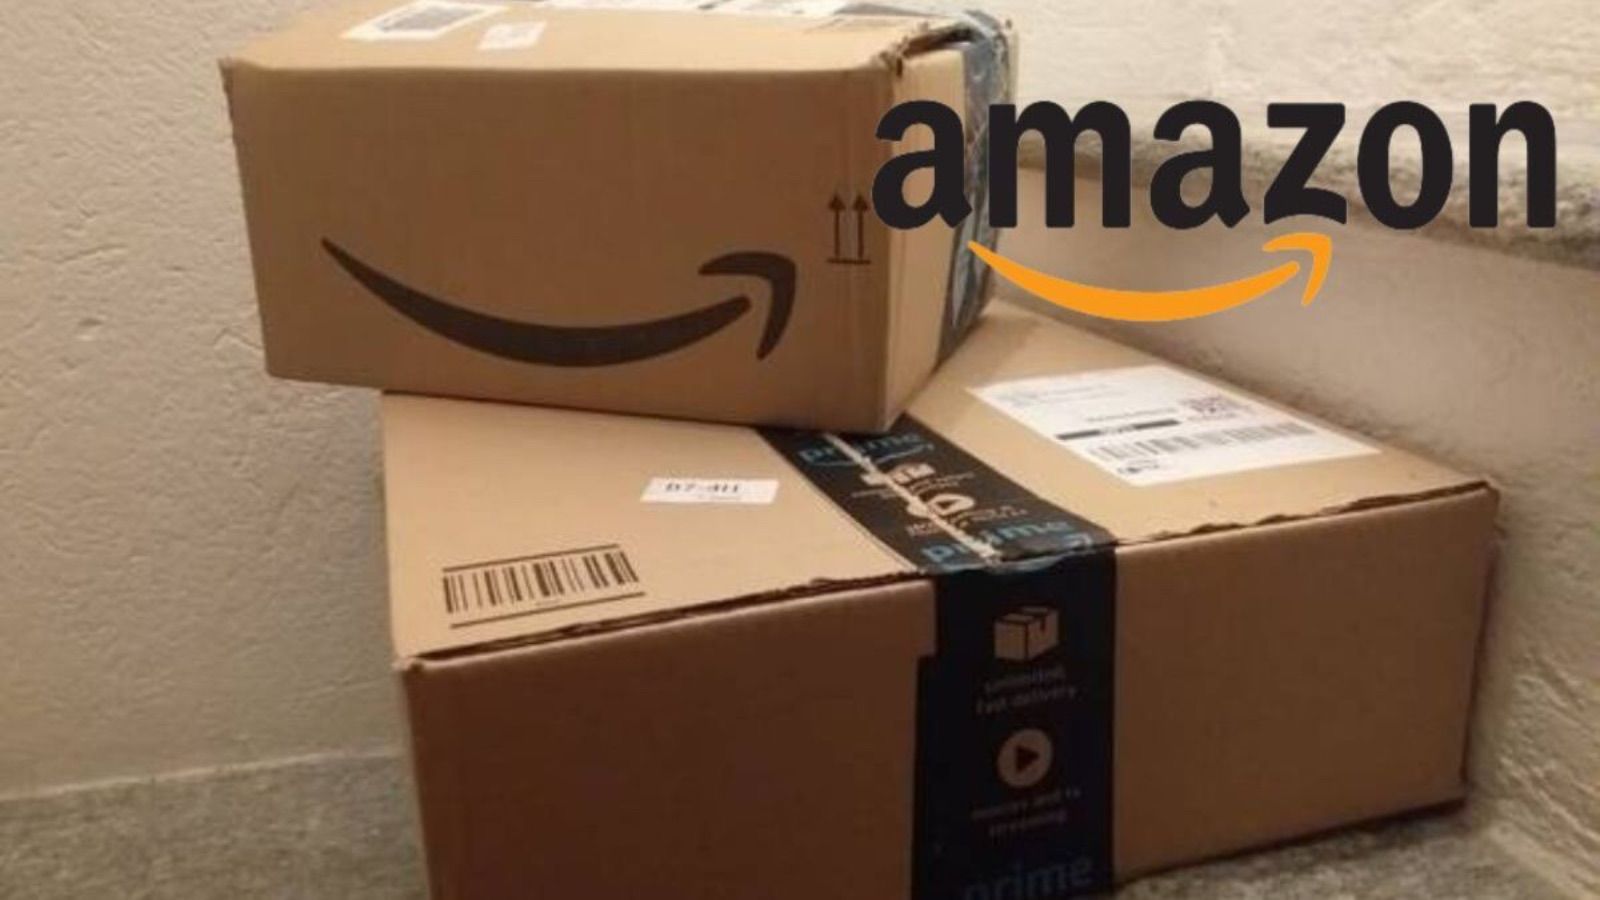 Amazon, pezzi al 70% oggi contro Unieuro e promo SHOCK